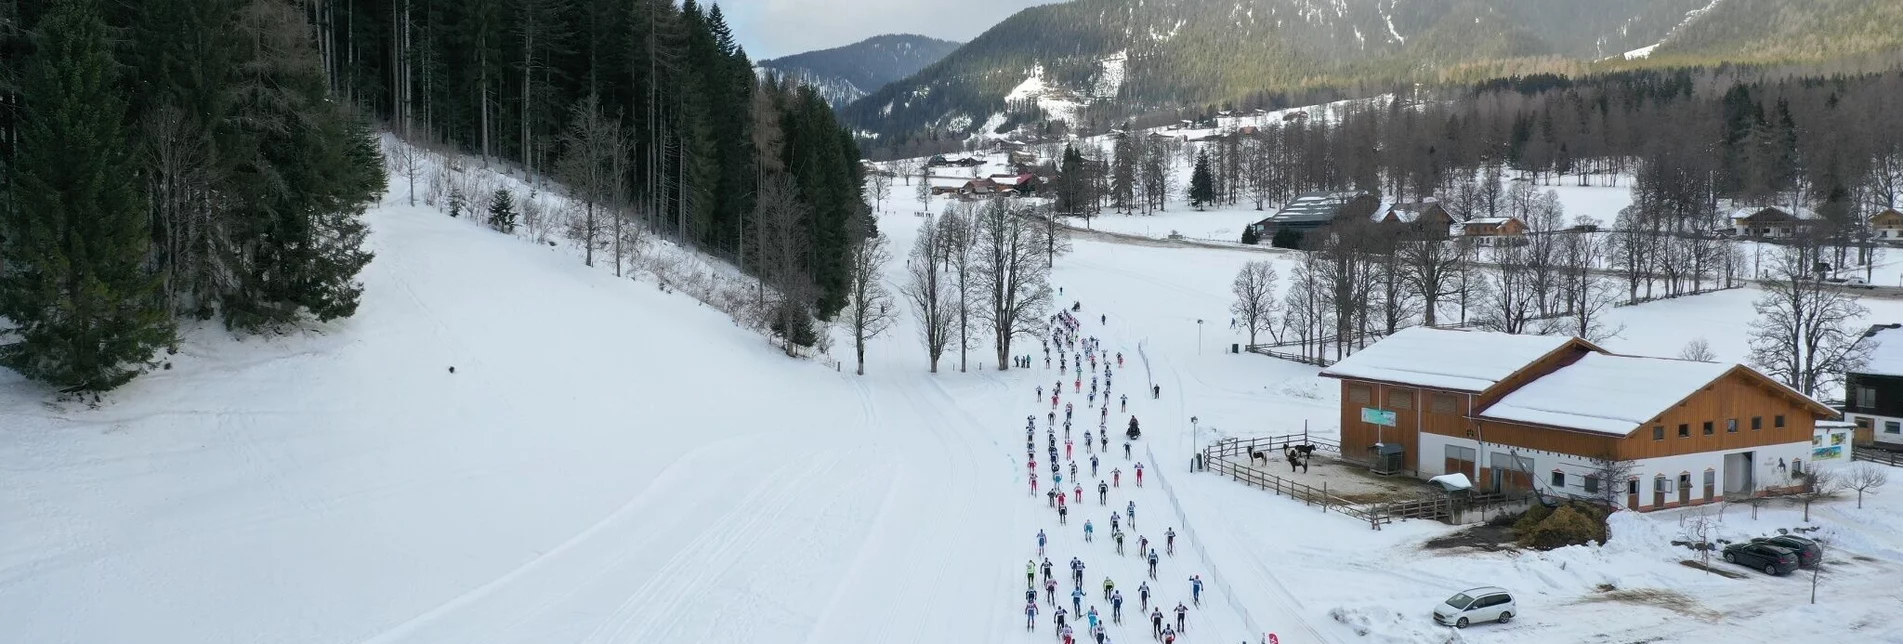 Cross-Country Skiing Dachsteinlauf 10 km Classic & Skating - Touren-Impression #1 | © Erlebnisregion Schladming-Dachstein